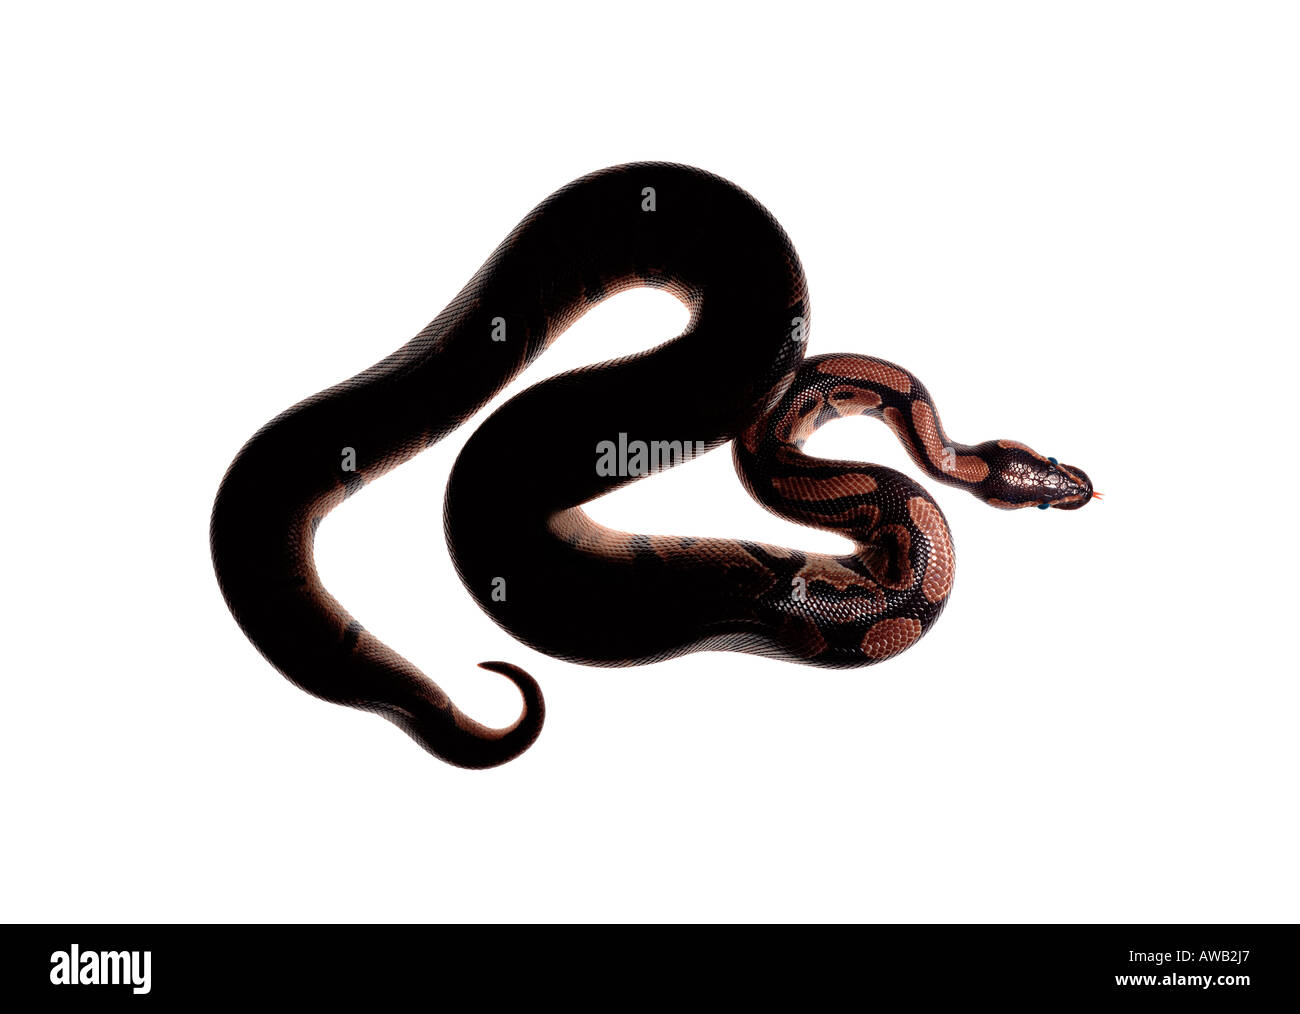 Eine aufgerollte Royal Python-Schlange. Stockfoto